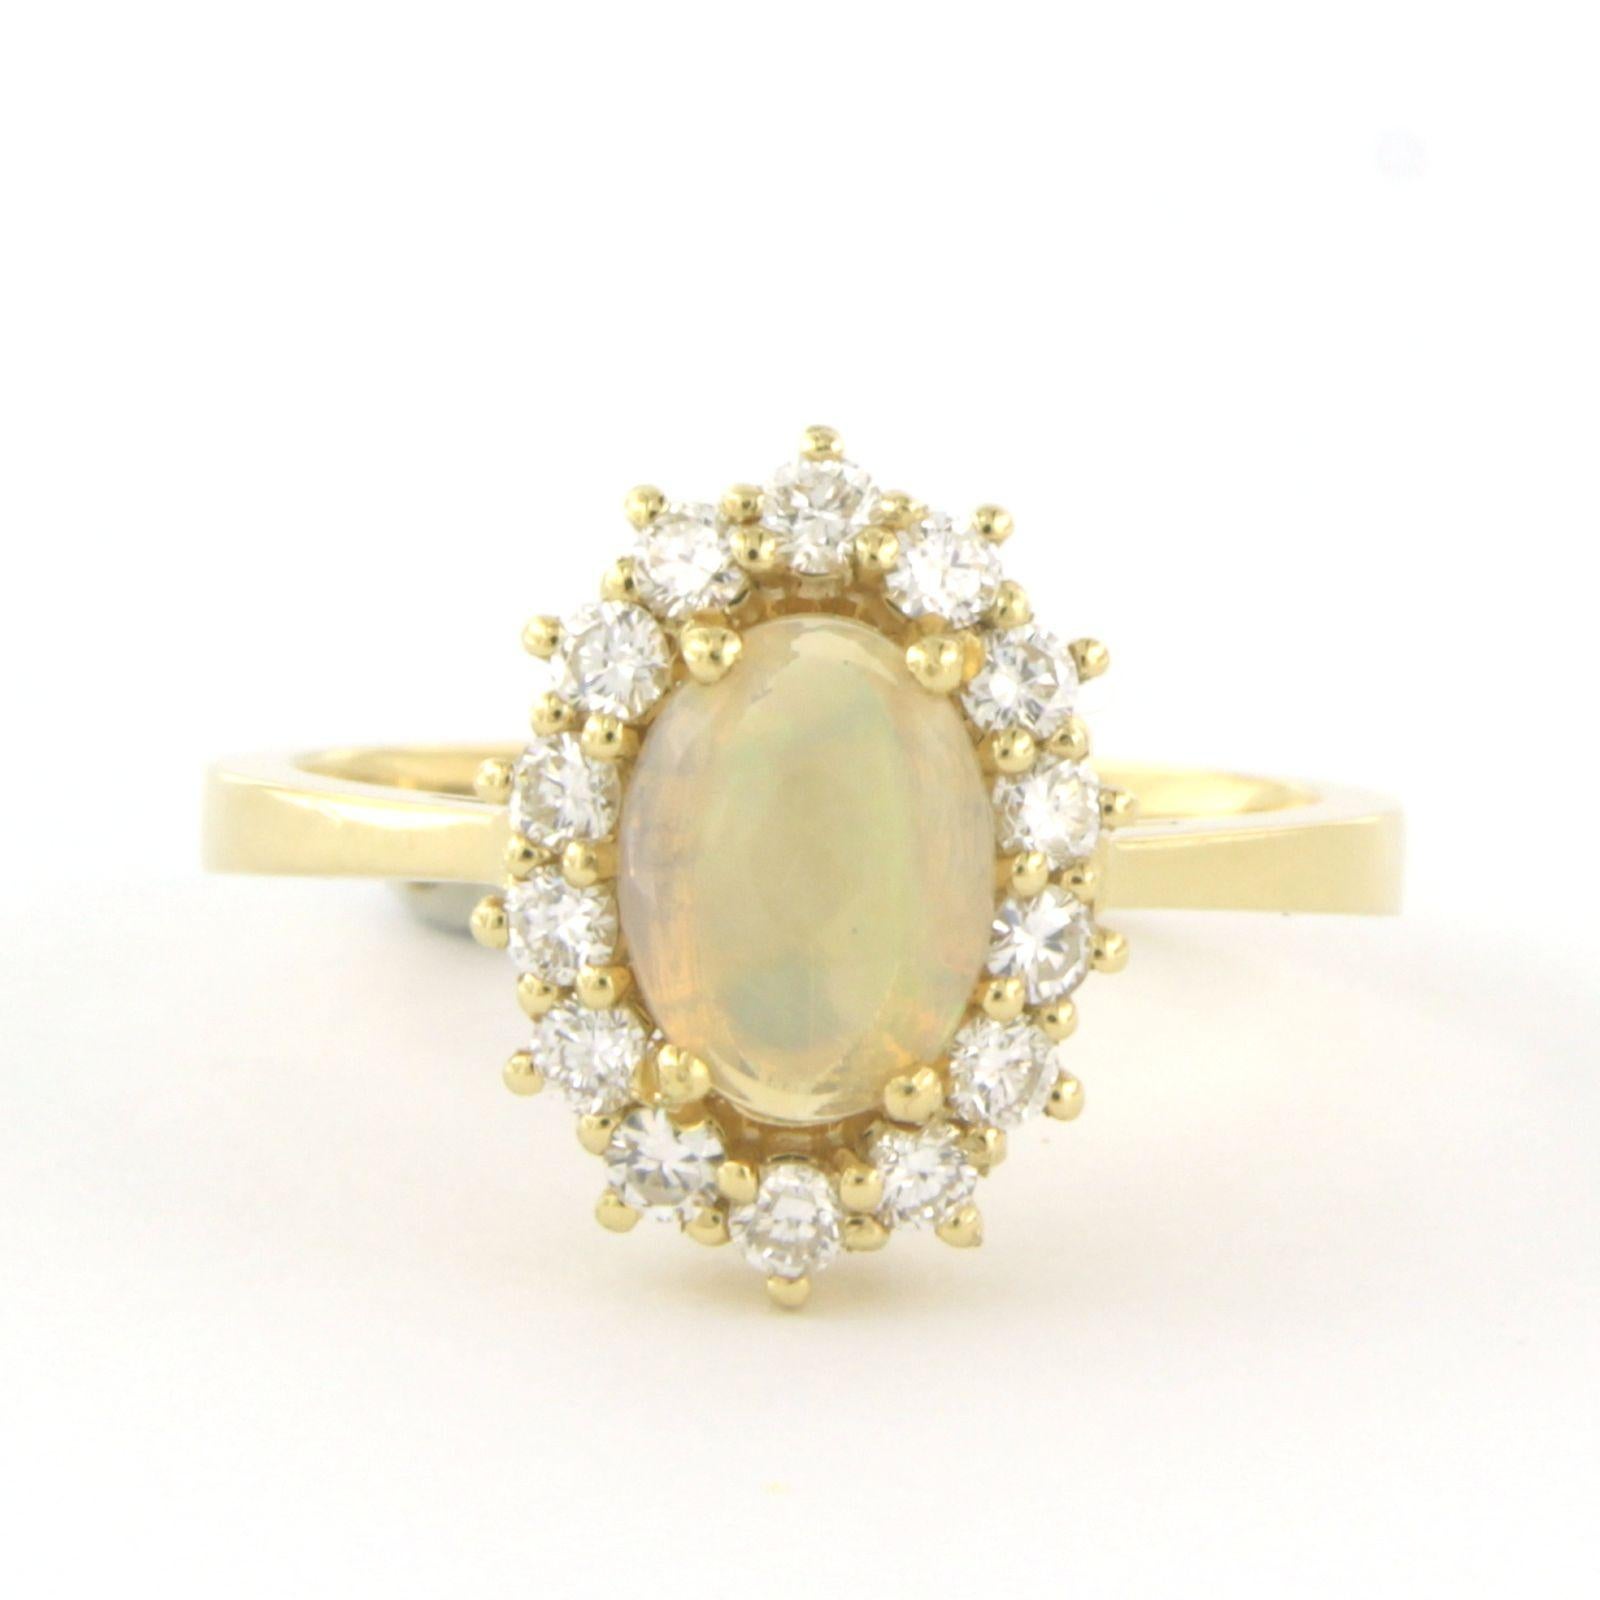 Ring aus 18 kt Gelbgold, besetzt mit Opal und Diamanten im Brillantschliff, insgesamt 0,46 ct - G/H - VS/SI - Ringgröße U.S. 7.25 - EU. 17.5(55)

Ausführliche Beschreibung

die Oberseite des Rings ist 1,4 cm breit und 6,6 mm hoch

Ringgröße US 7.25